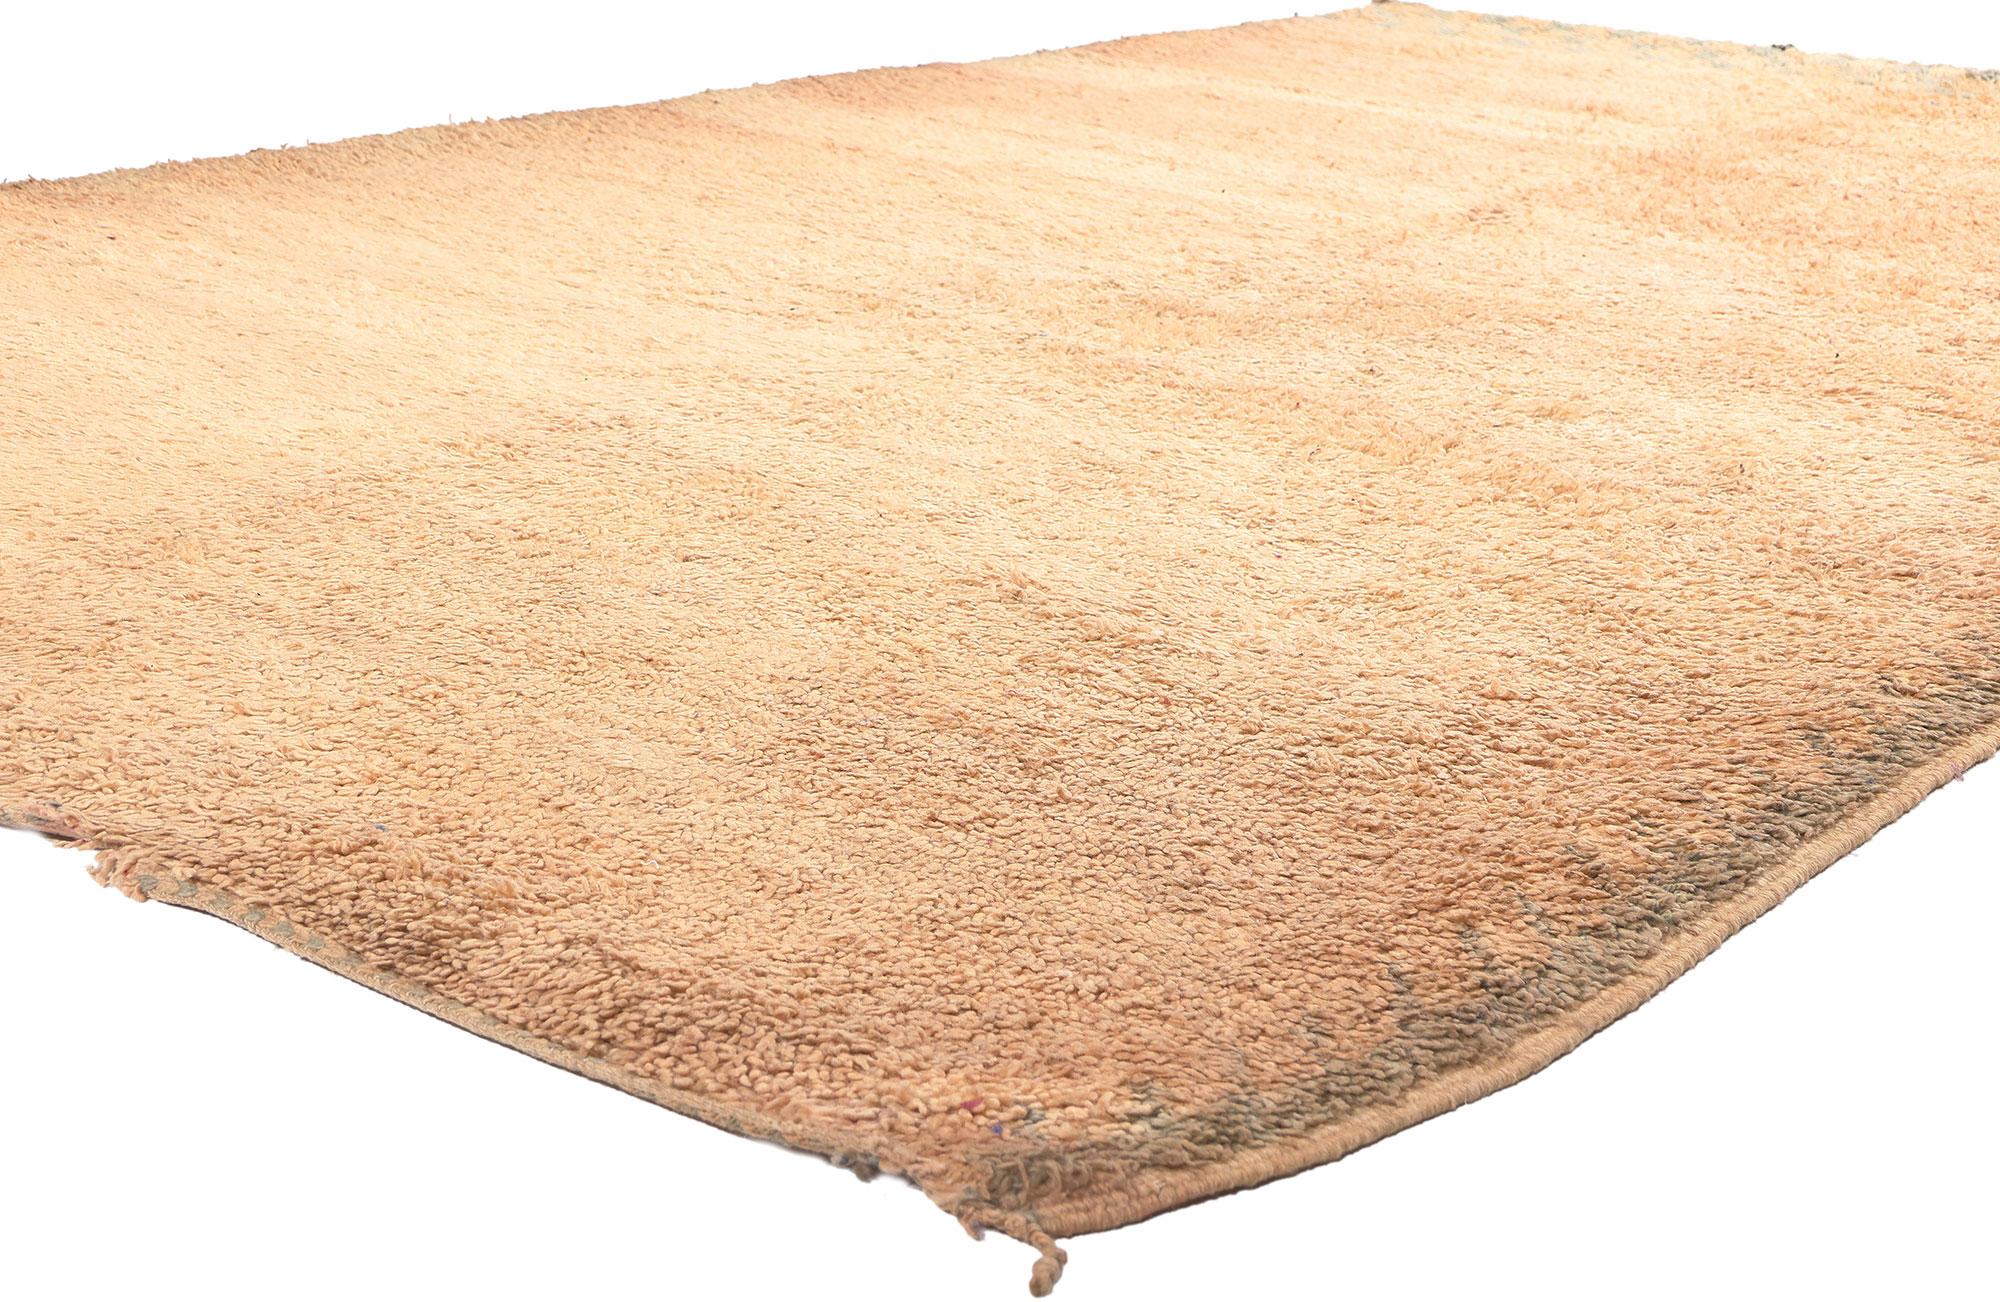 20928 Tapis marocain Vintage Beni MGuild, 06'02 x 09'10. 
Dans le monde serein de l'esthétique Shibui, voici ce tapis marocain vintage Beni Mguild en laine nouée à la main - un chef-d'œuvre du Moyen Atlas central occidental, méticuleusement